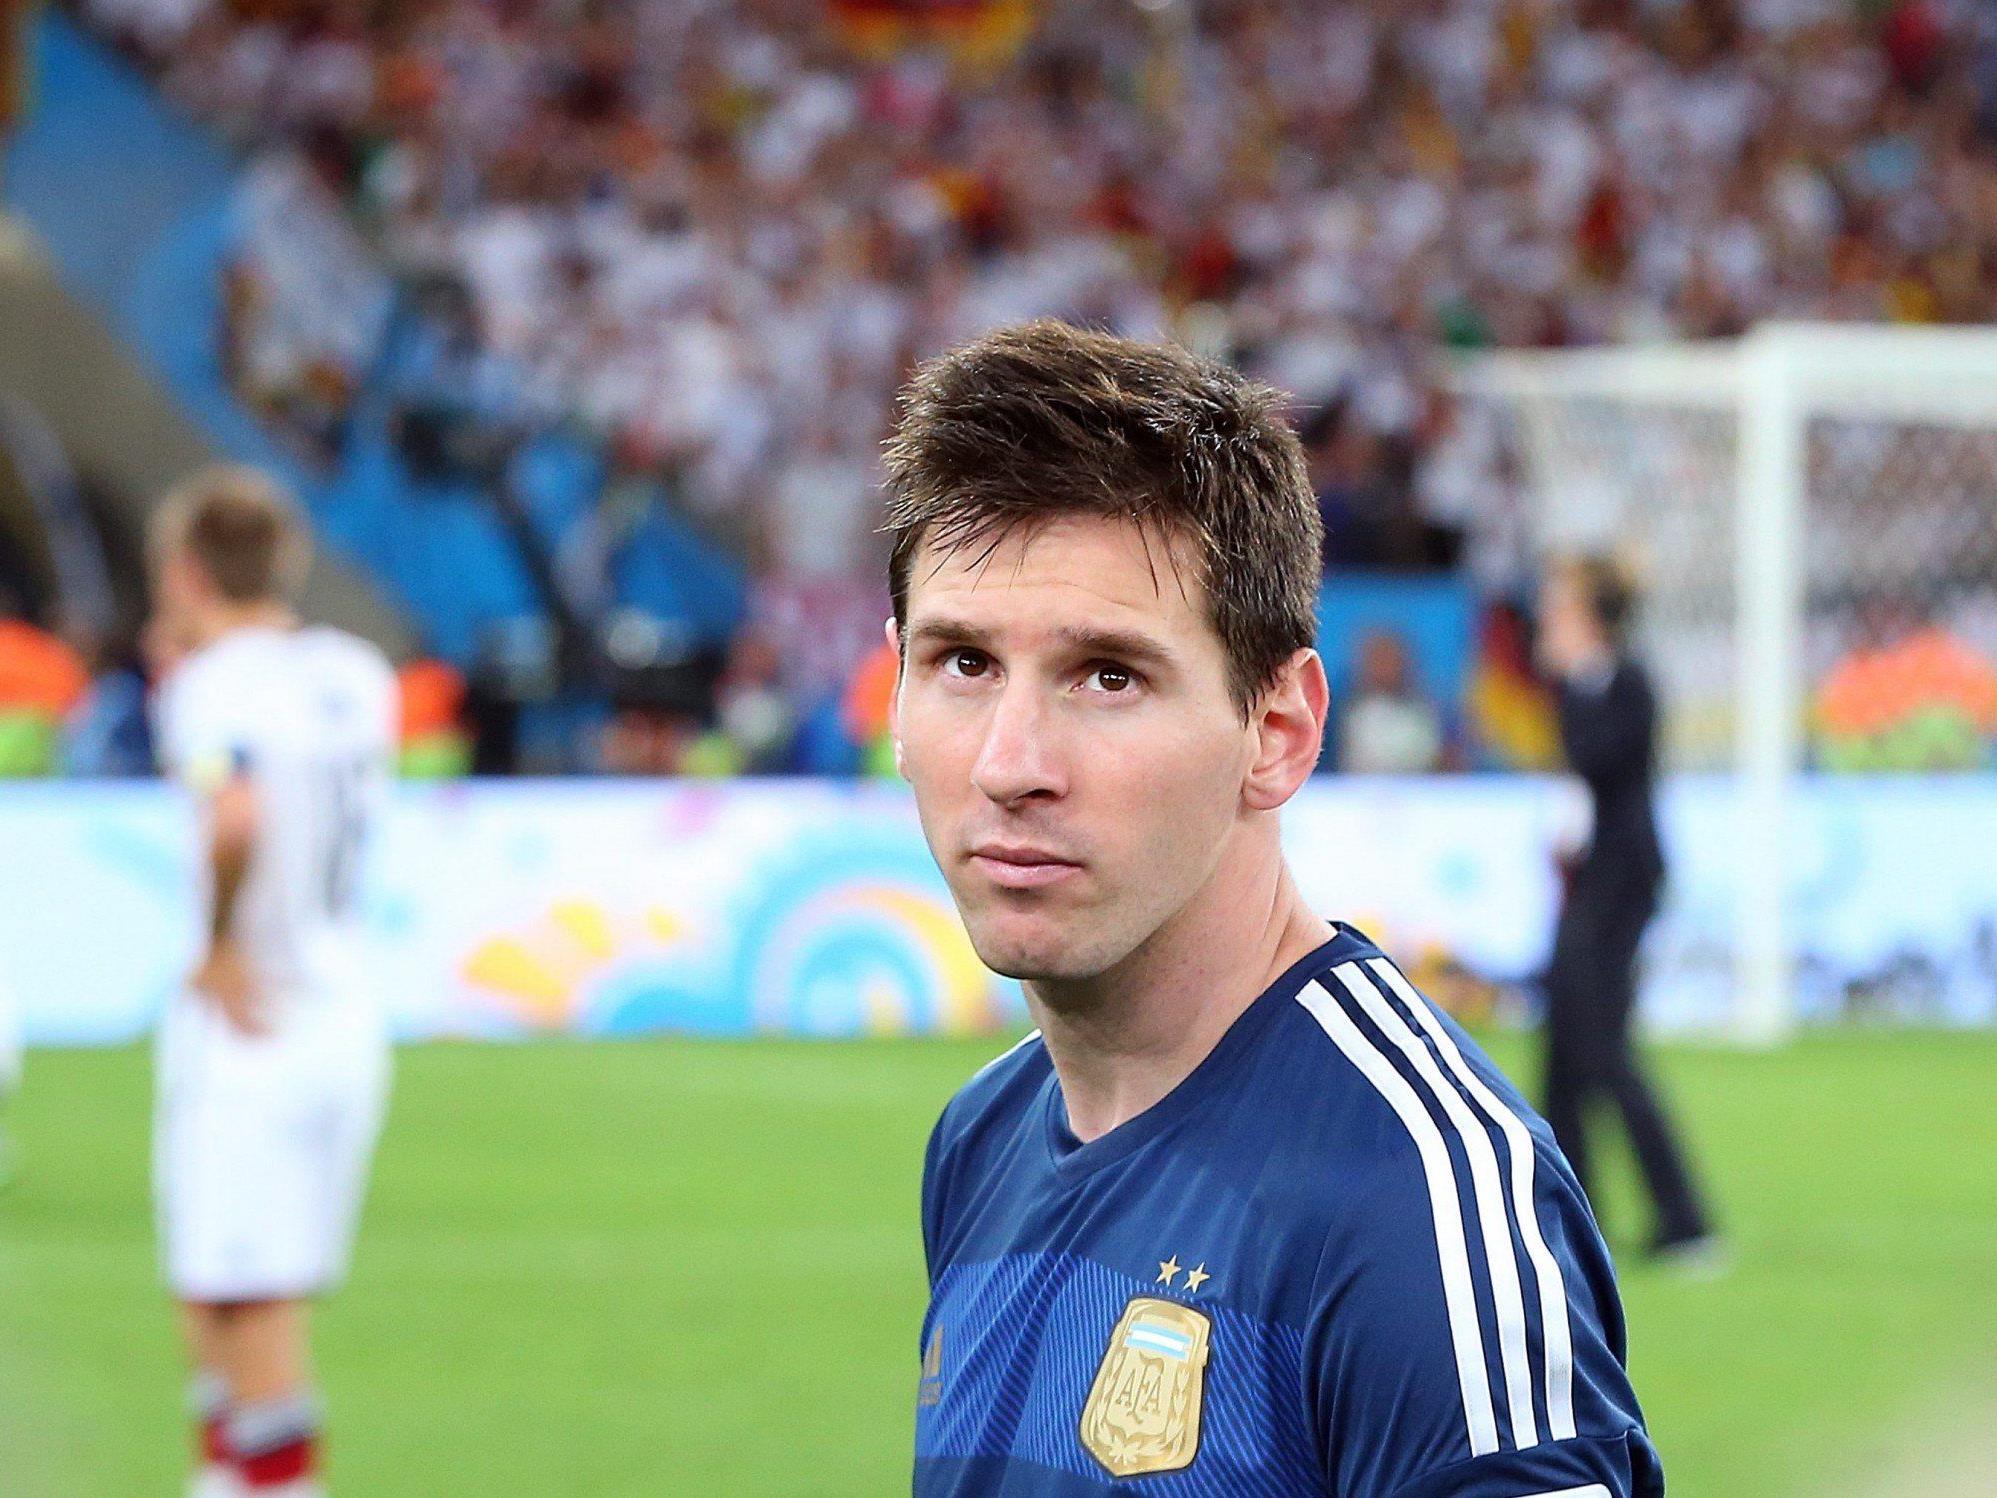 Die Auszeichnung als bester Spieler des Turniers war nach der Niederlage gegen Deutschland kein Trost für Messi.